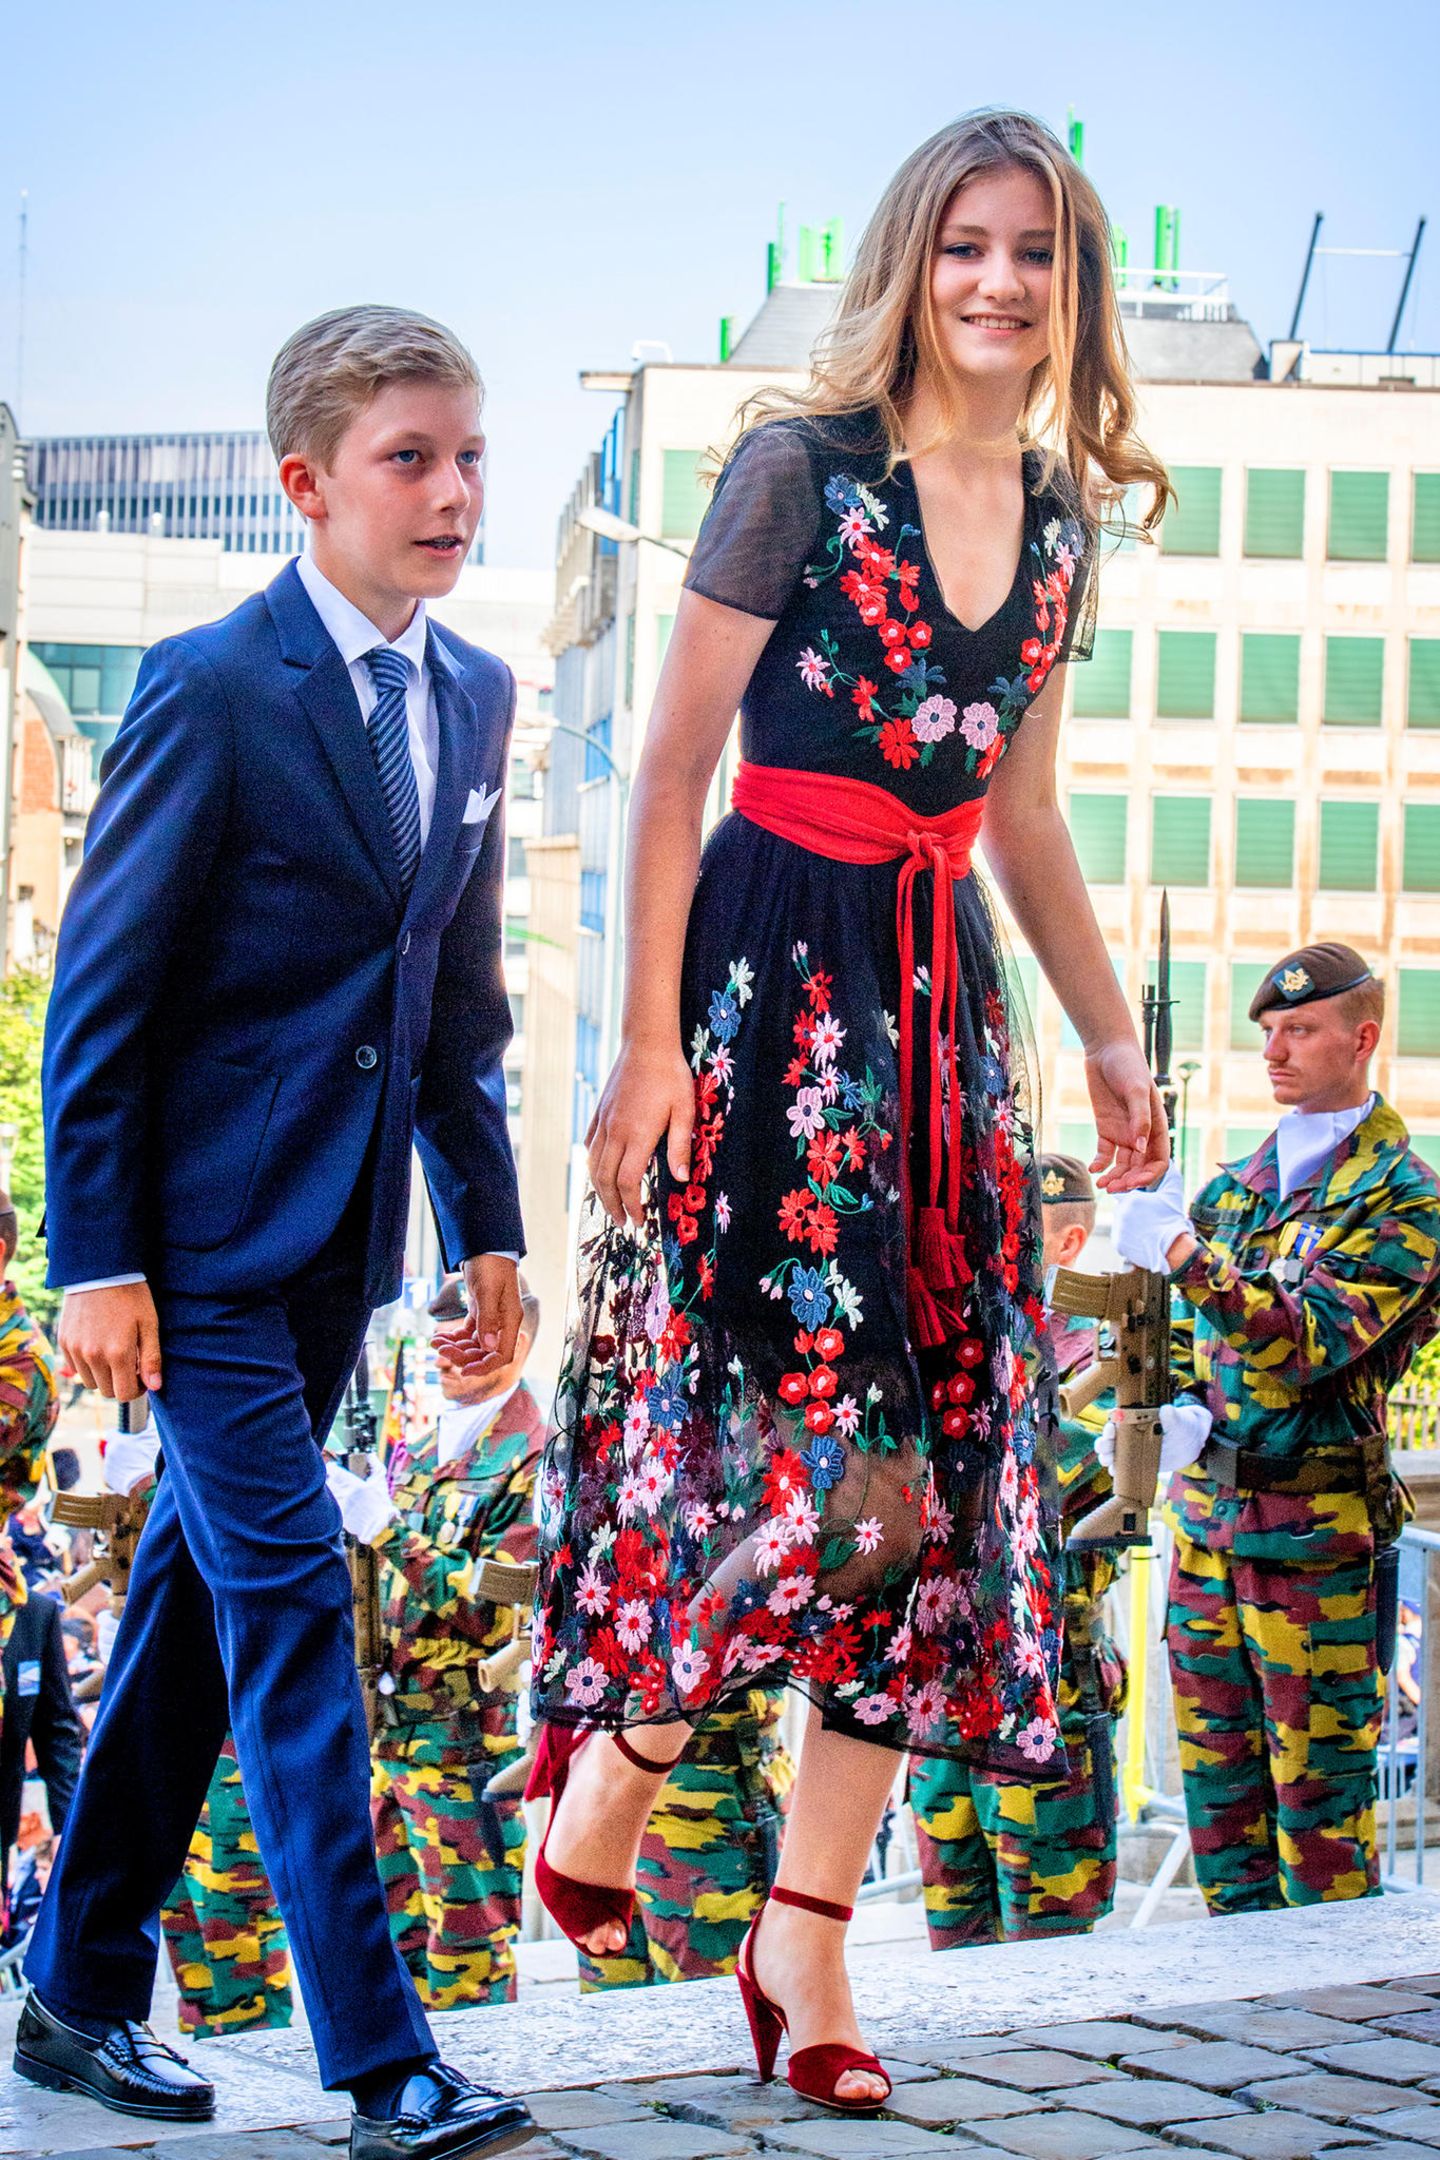 Am Nationalfeiertag in Brüssel 2018 setzt die Prinzessin Elisabeth von Belgien auf ein Kleid im Folklore-Stil - und strahlt dabei neben ihrem Bruder Emmanuel.